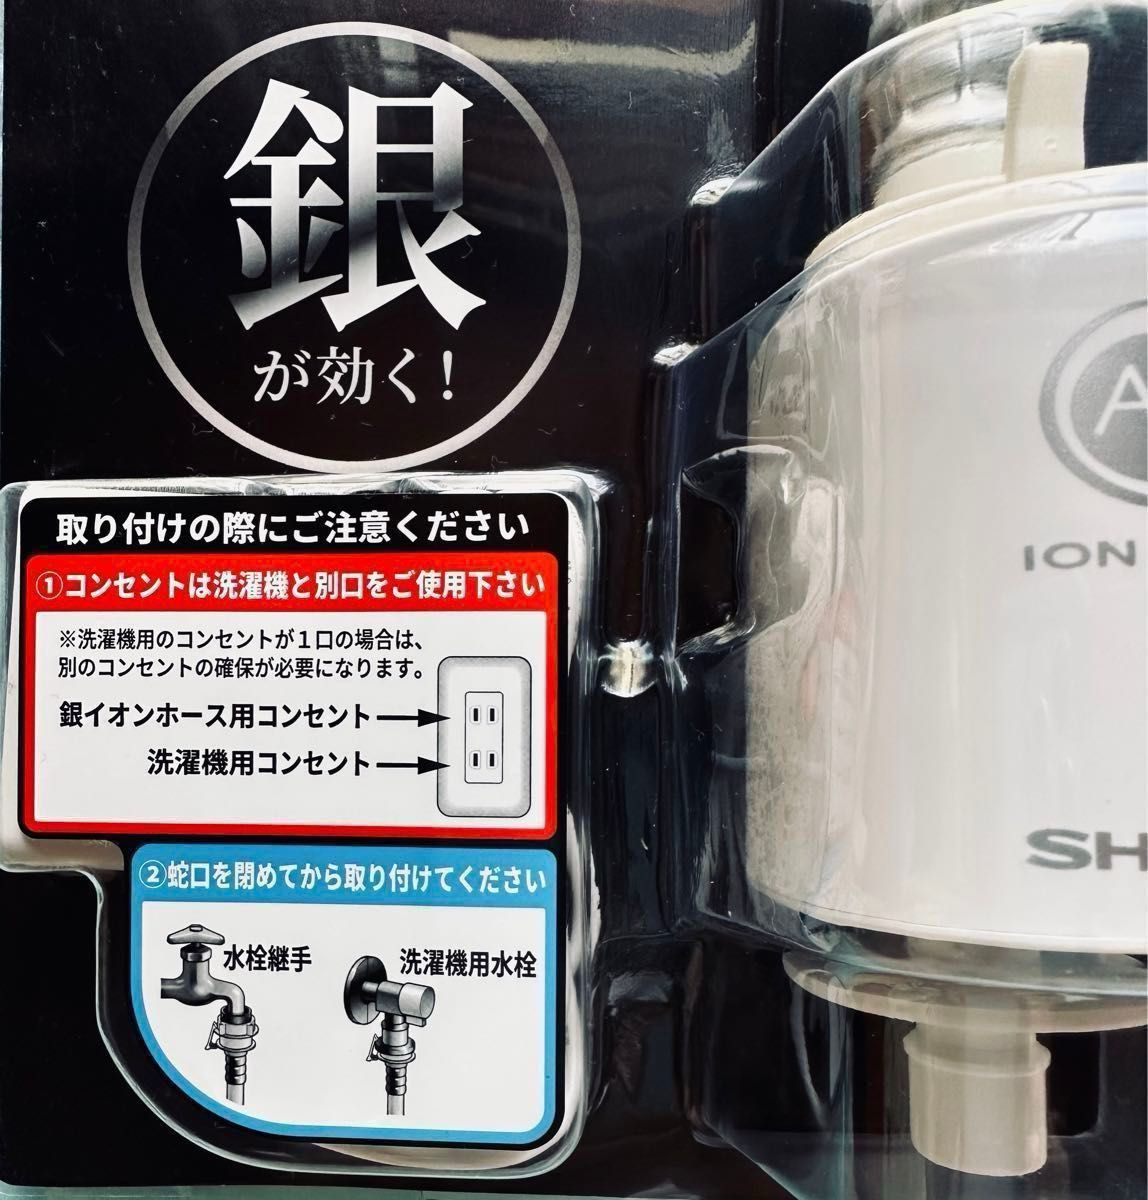 SHARP シャープ AS-AG1 銀イオン給水ホース  新品未使用品  洗濯機 アクセサリー 気になる カビ ニオイ 抑制